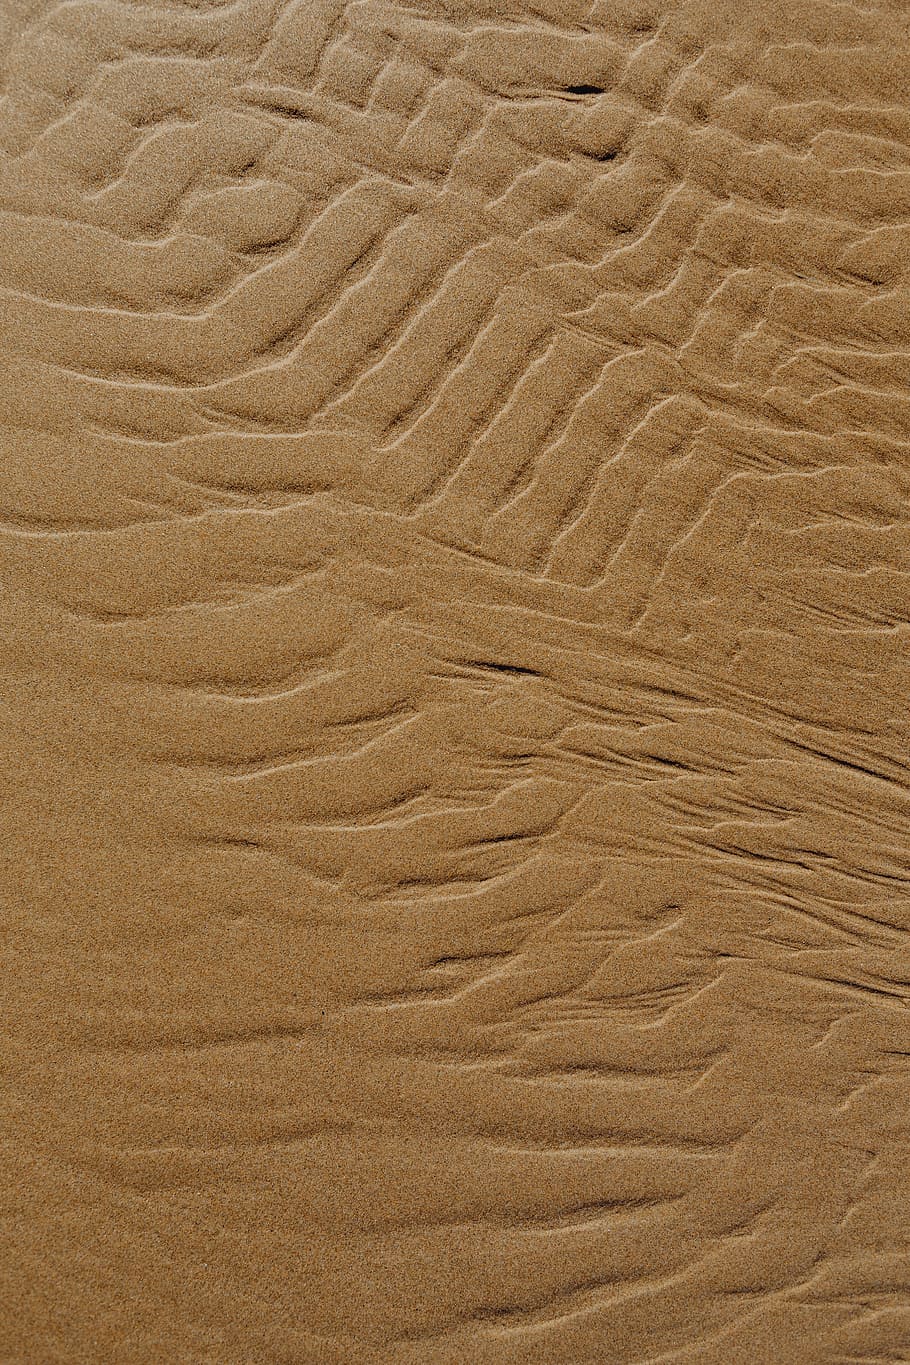 resumen, línea, diseñado, agua, textura de arena, playa, arena, fondo, textura, patrón